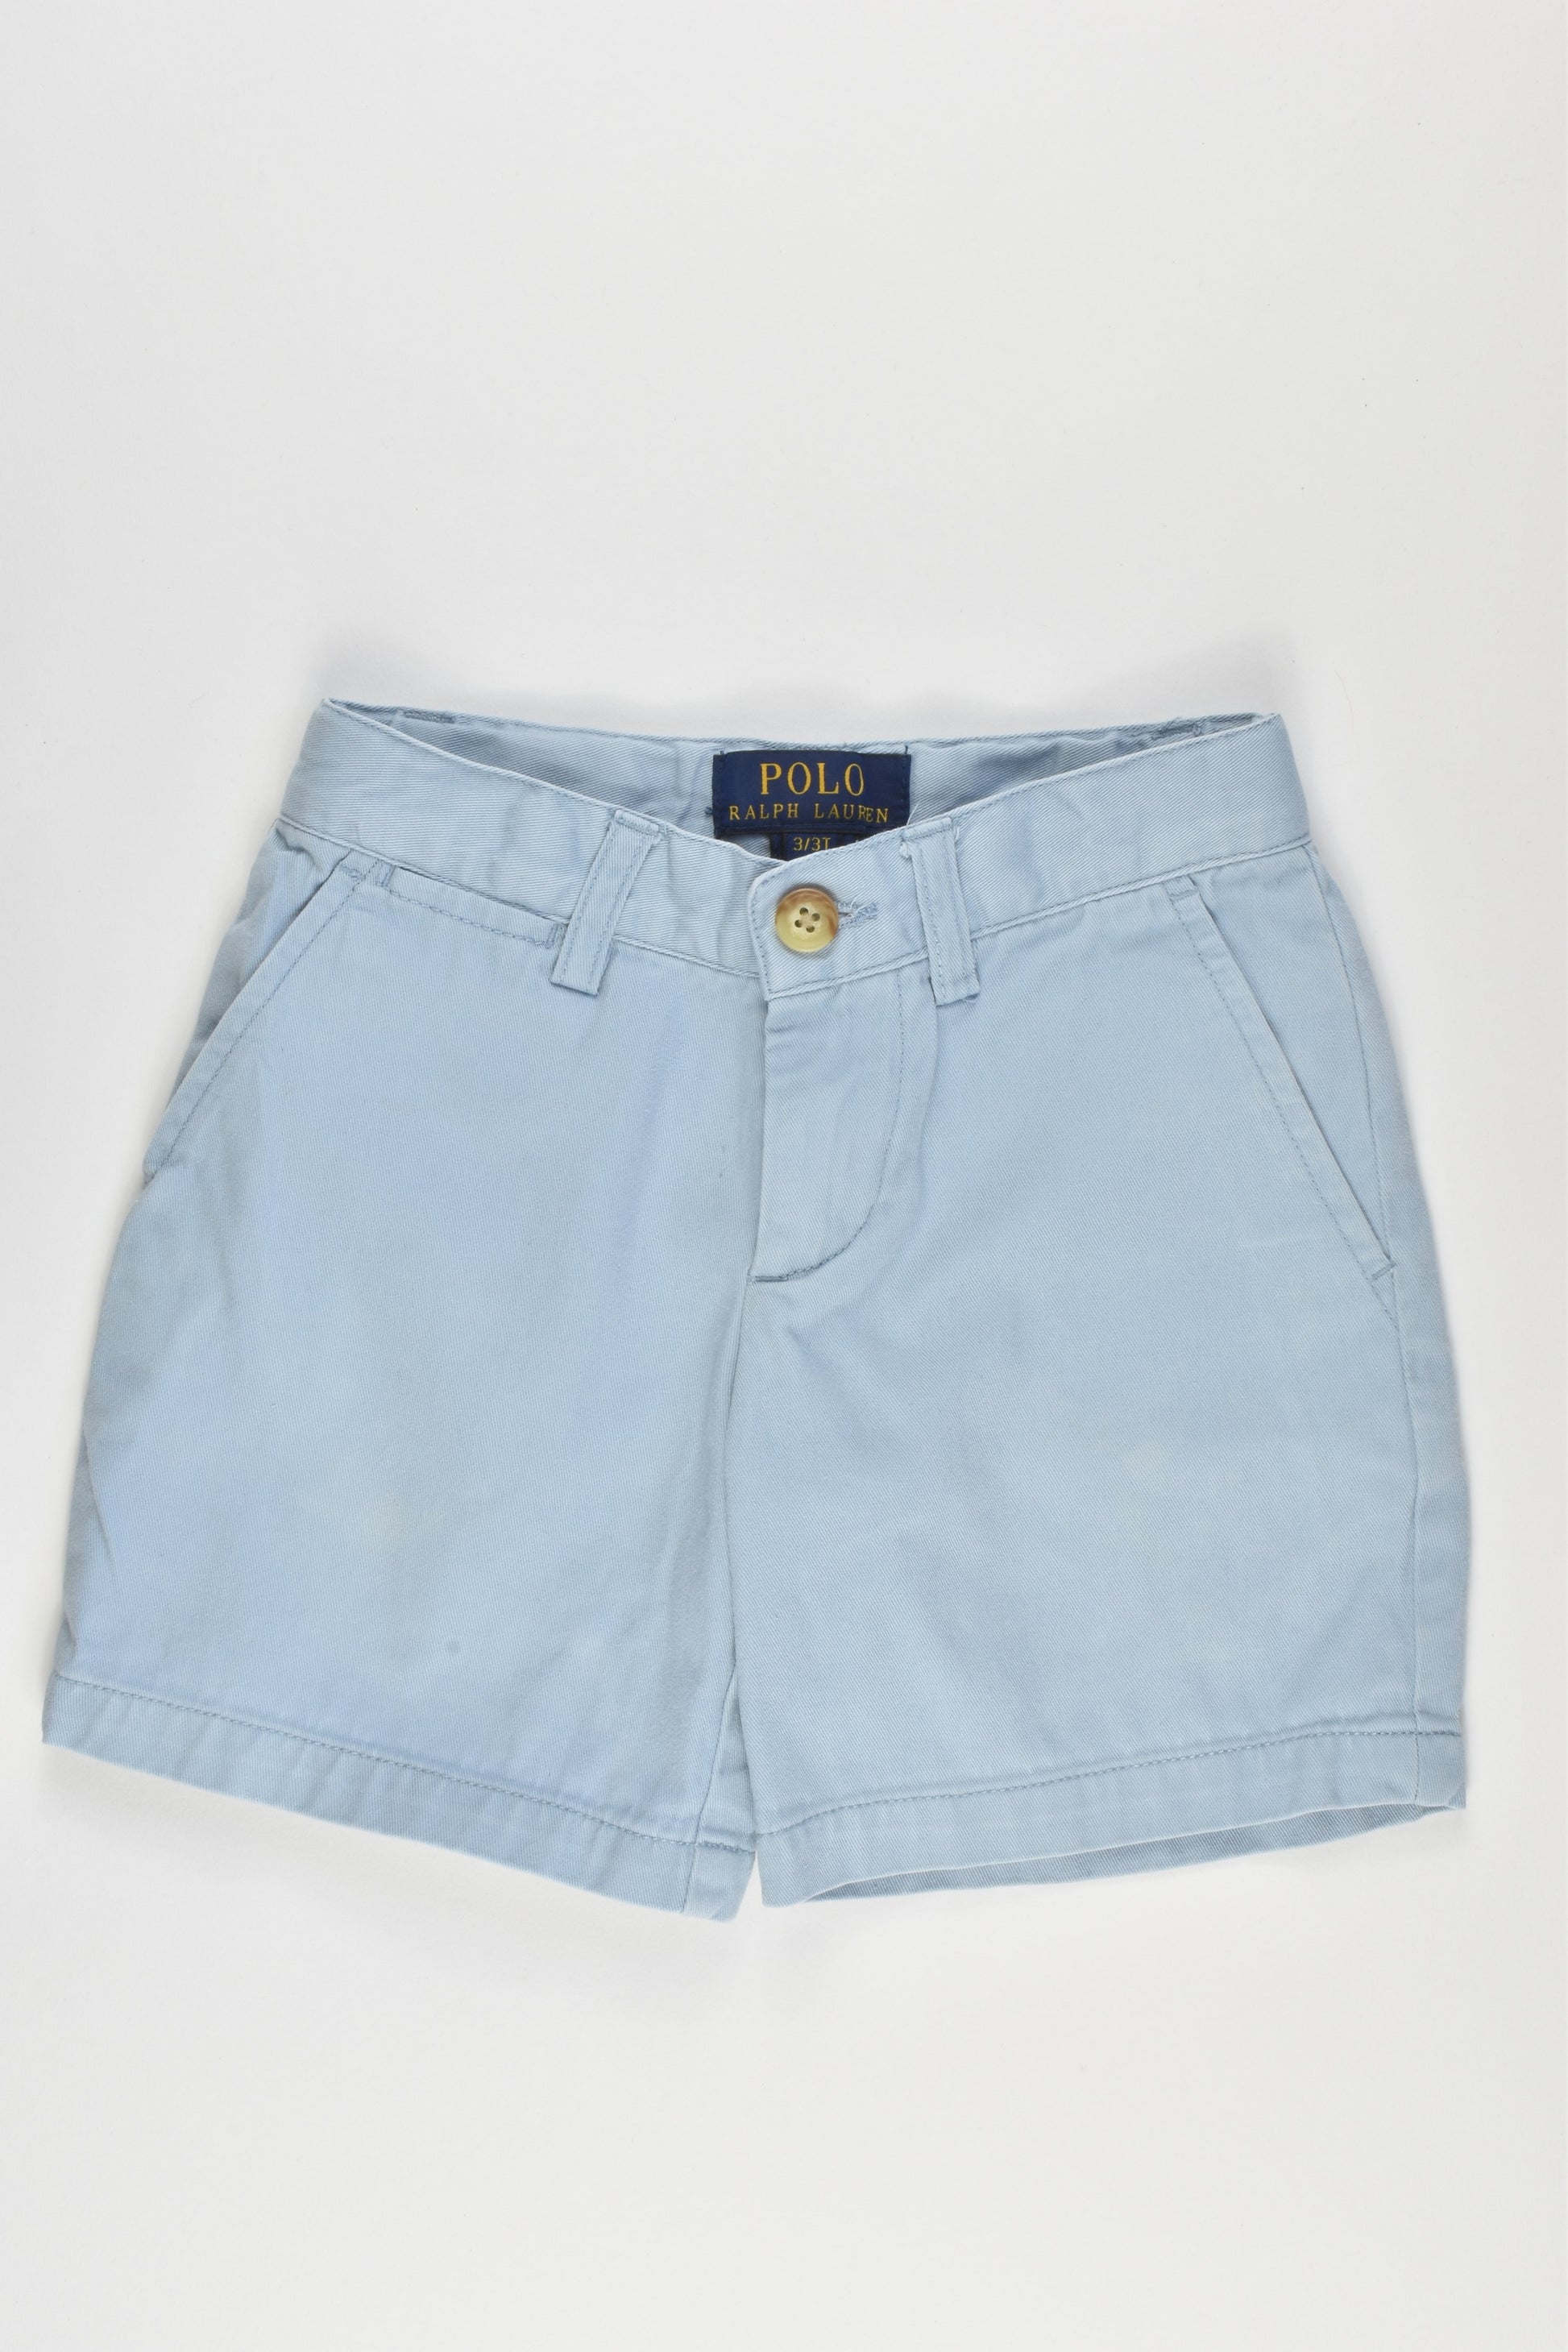 Ralph Lauren Size 3 Shorts